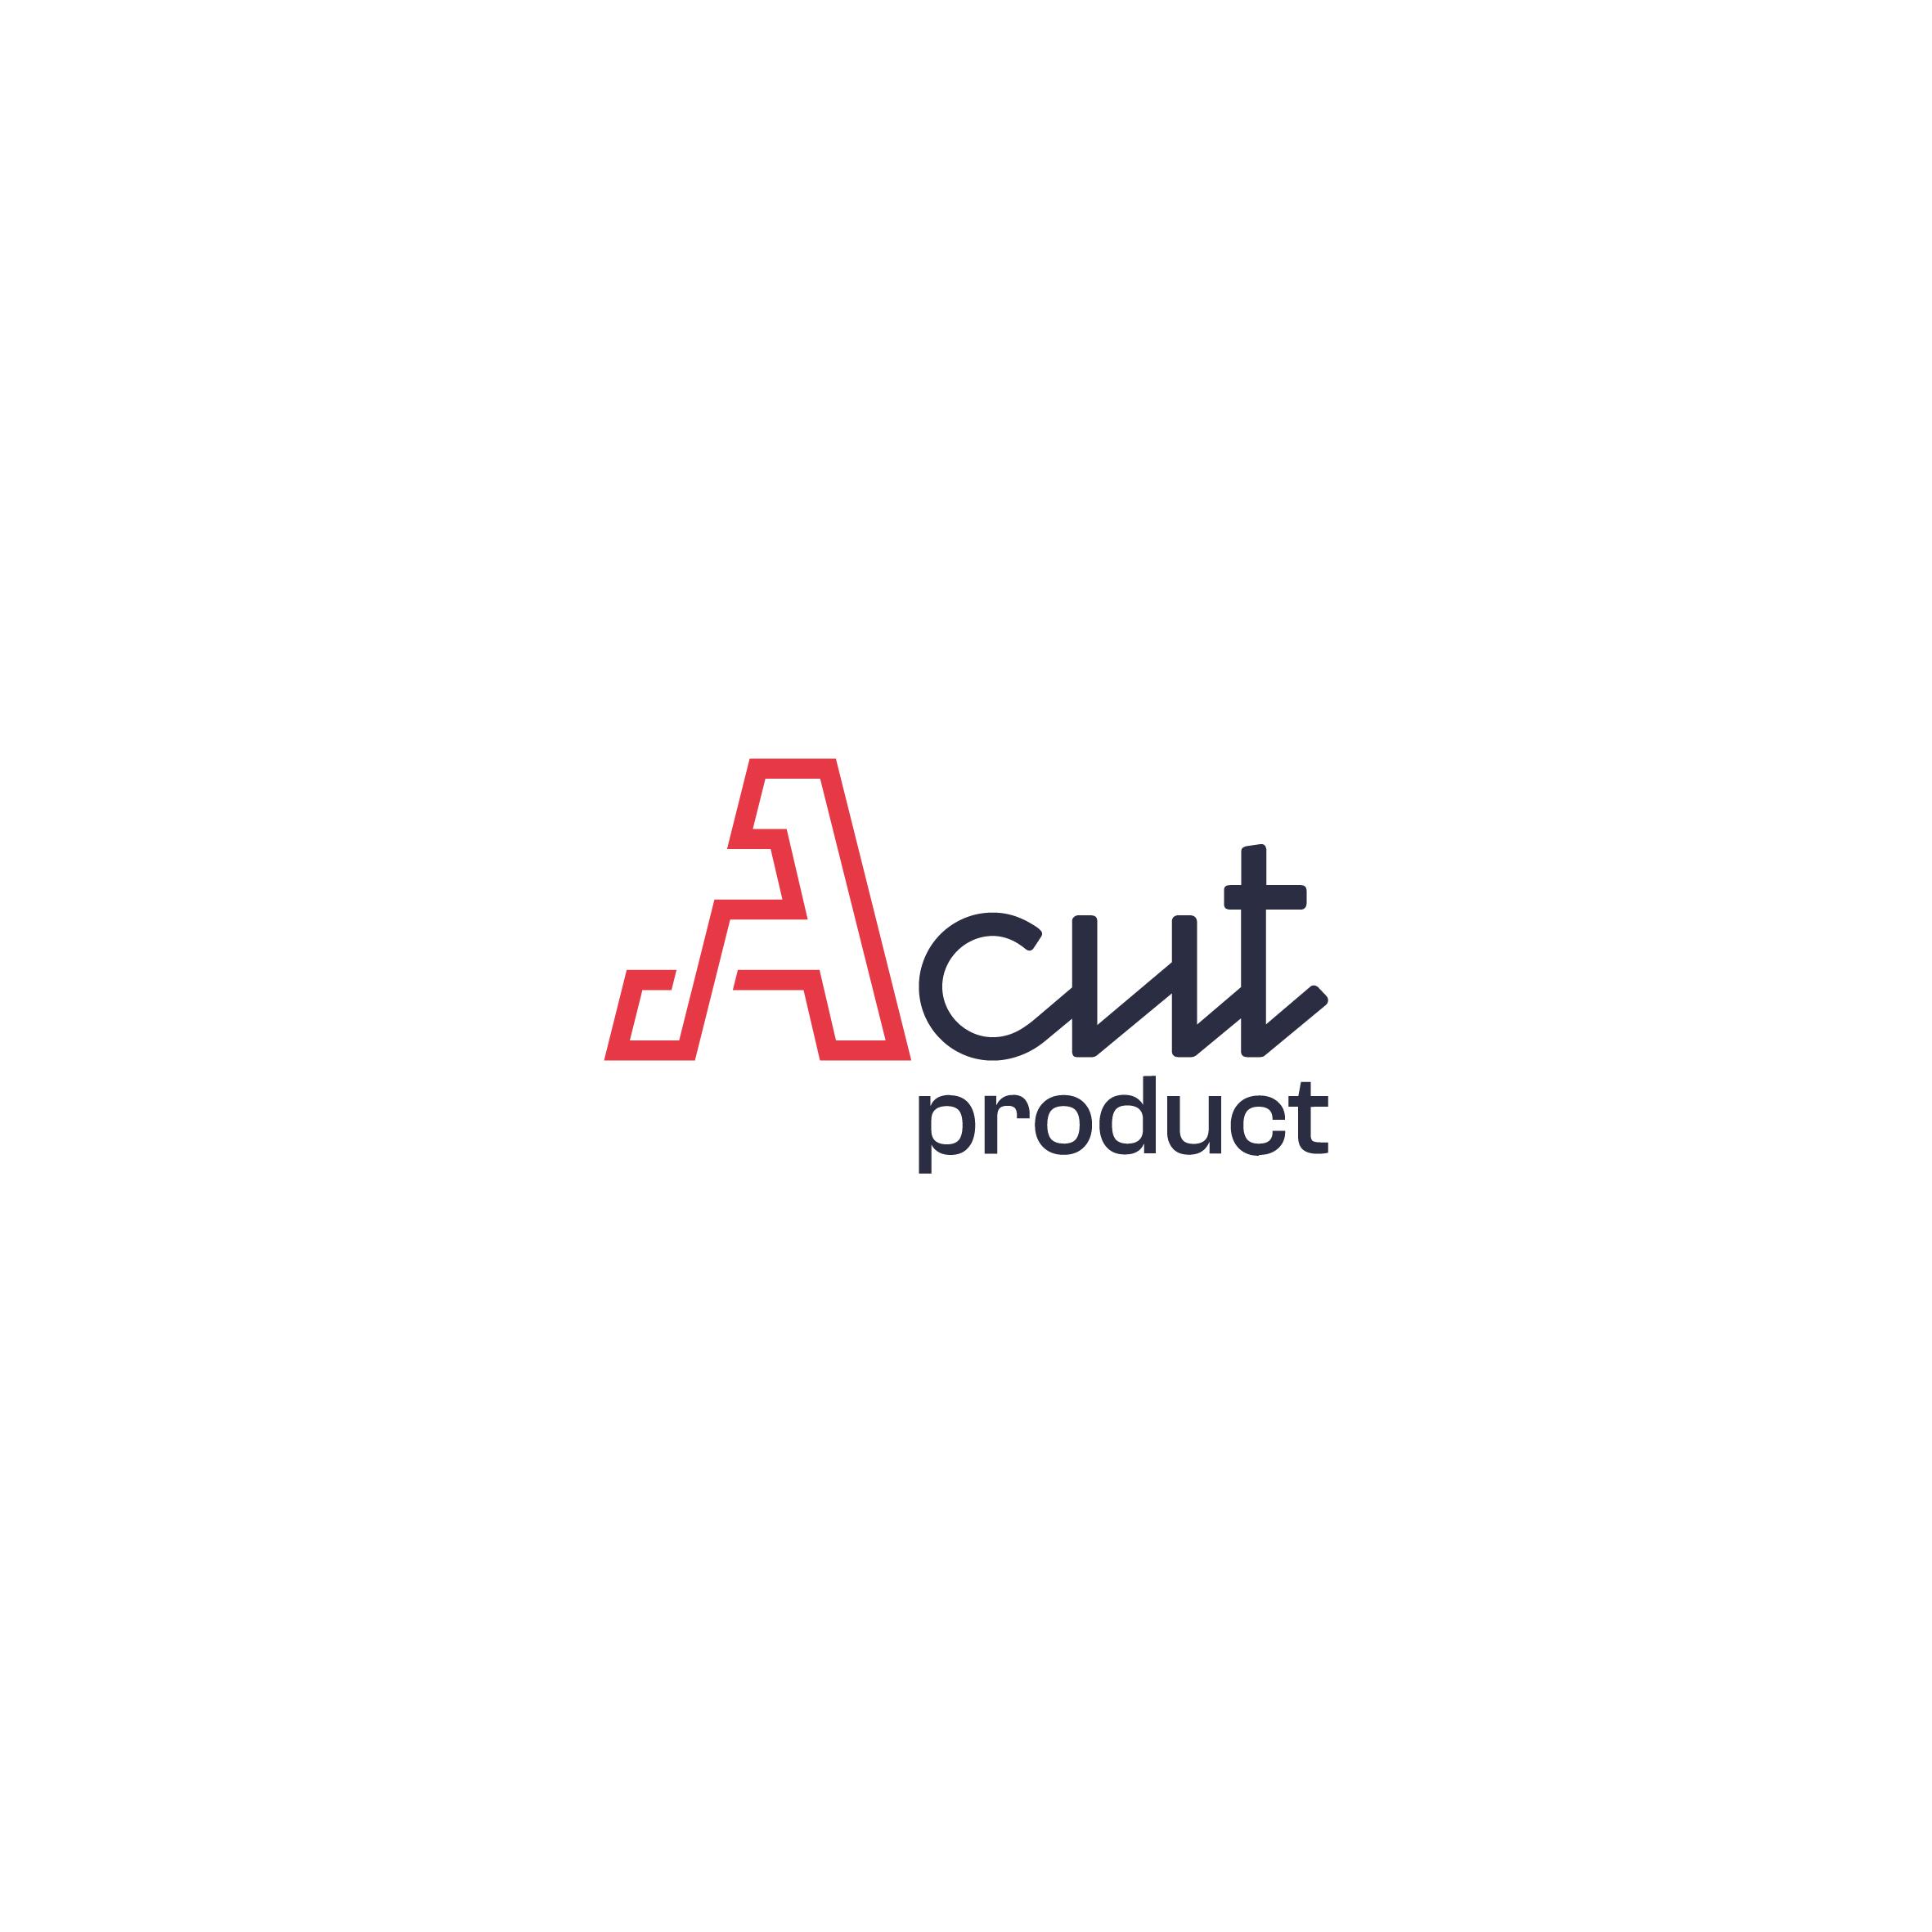 لوگو Acut product